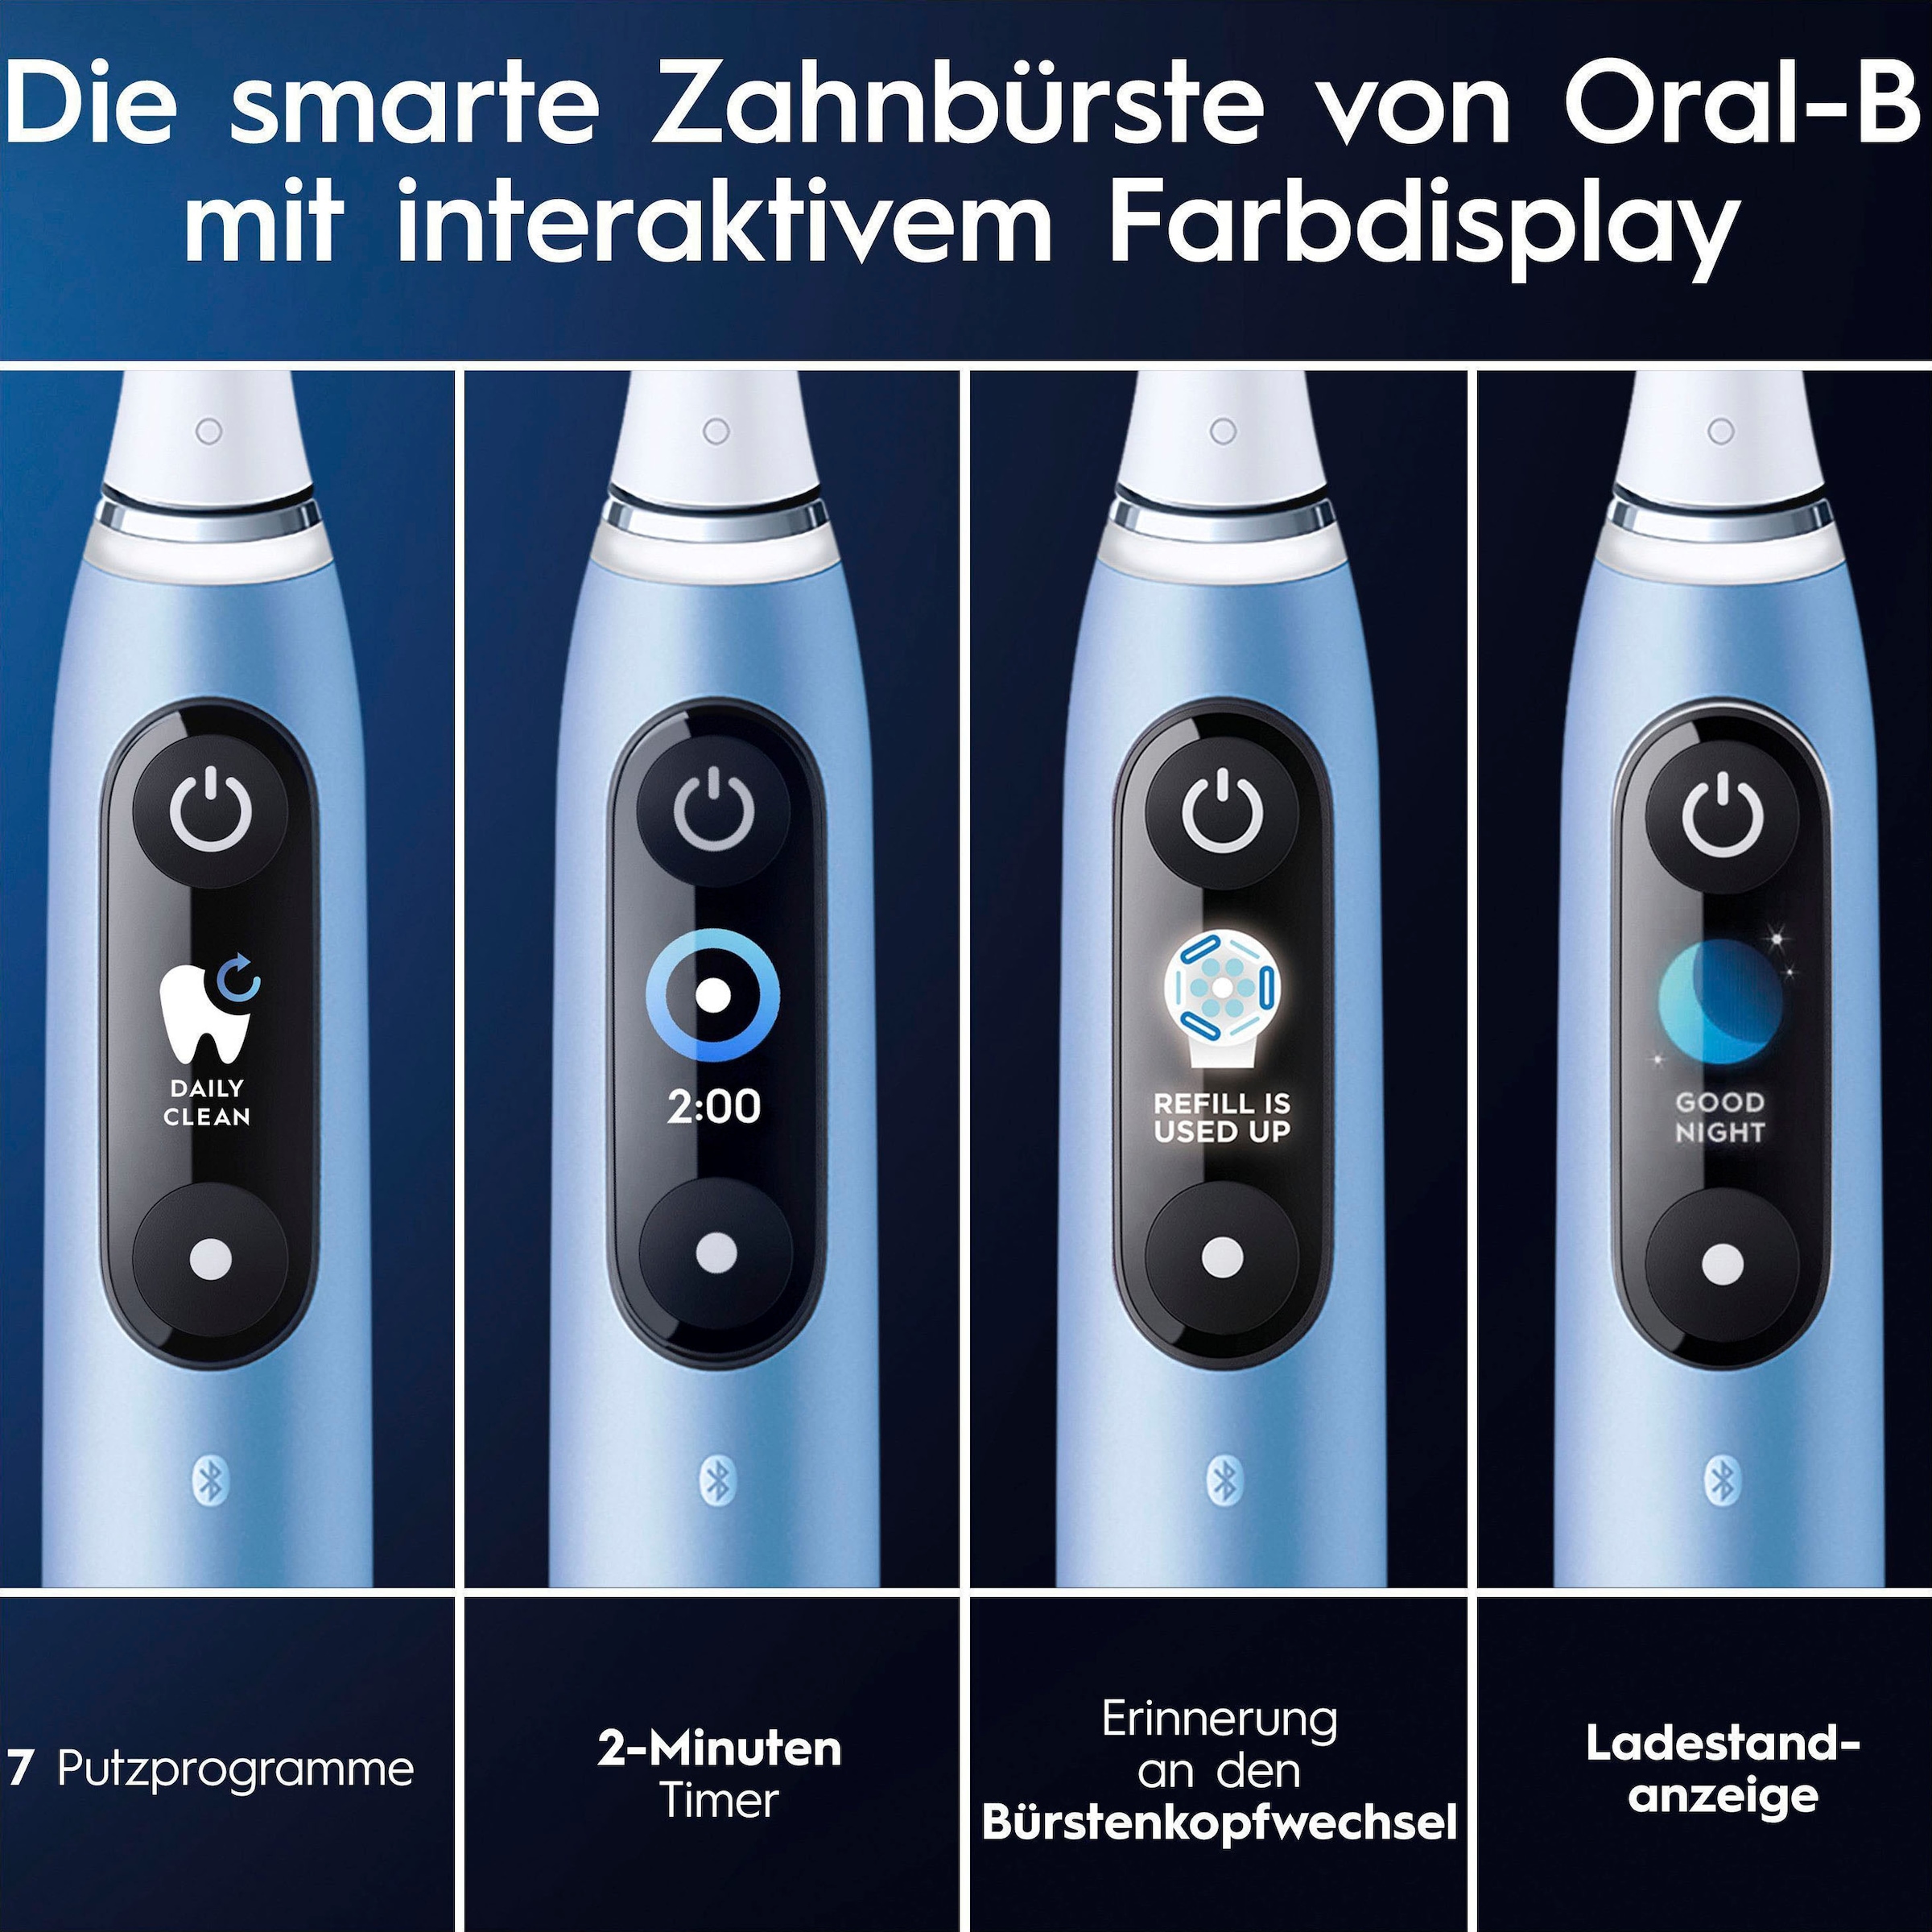 Oral-B Elektrische Zahnbürste »iO 9 Luxe Edition«, 1 St. Aufsteckbürsten, mit Magnet-Technologie, 7 Putzmodi, Farbdisplay & Lade-Reiseetui